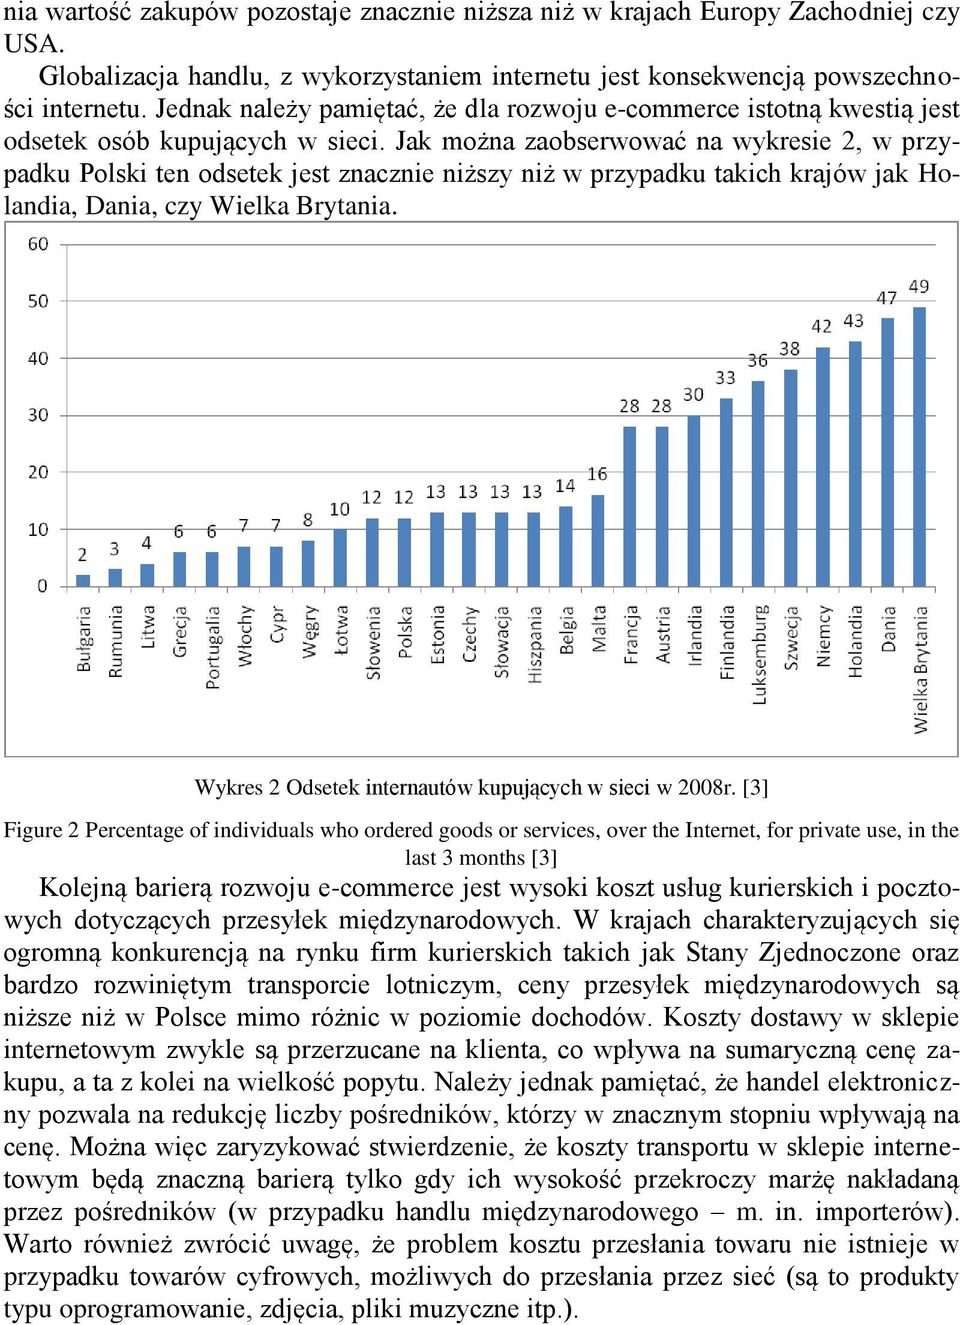 Jak można zaobserwować na wykresie 2, w przypadku Polski ten odsetek jest znacznie niższy niż w przypadku takich krajów jak Holandia, Dania, czy Wielka Brytania.